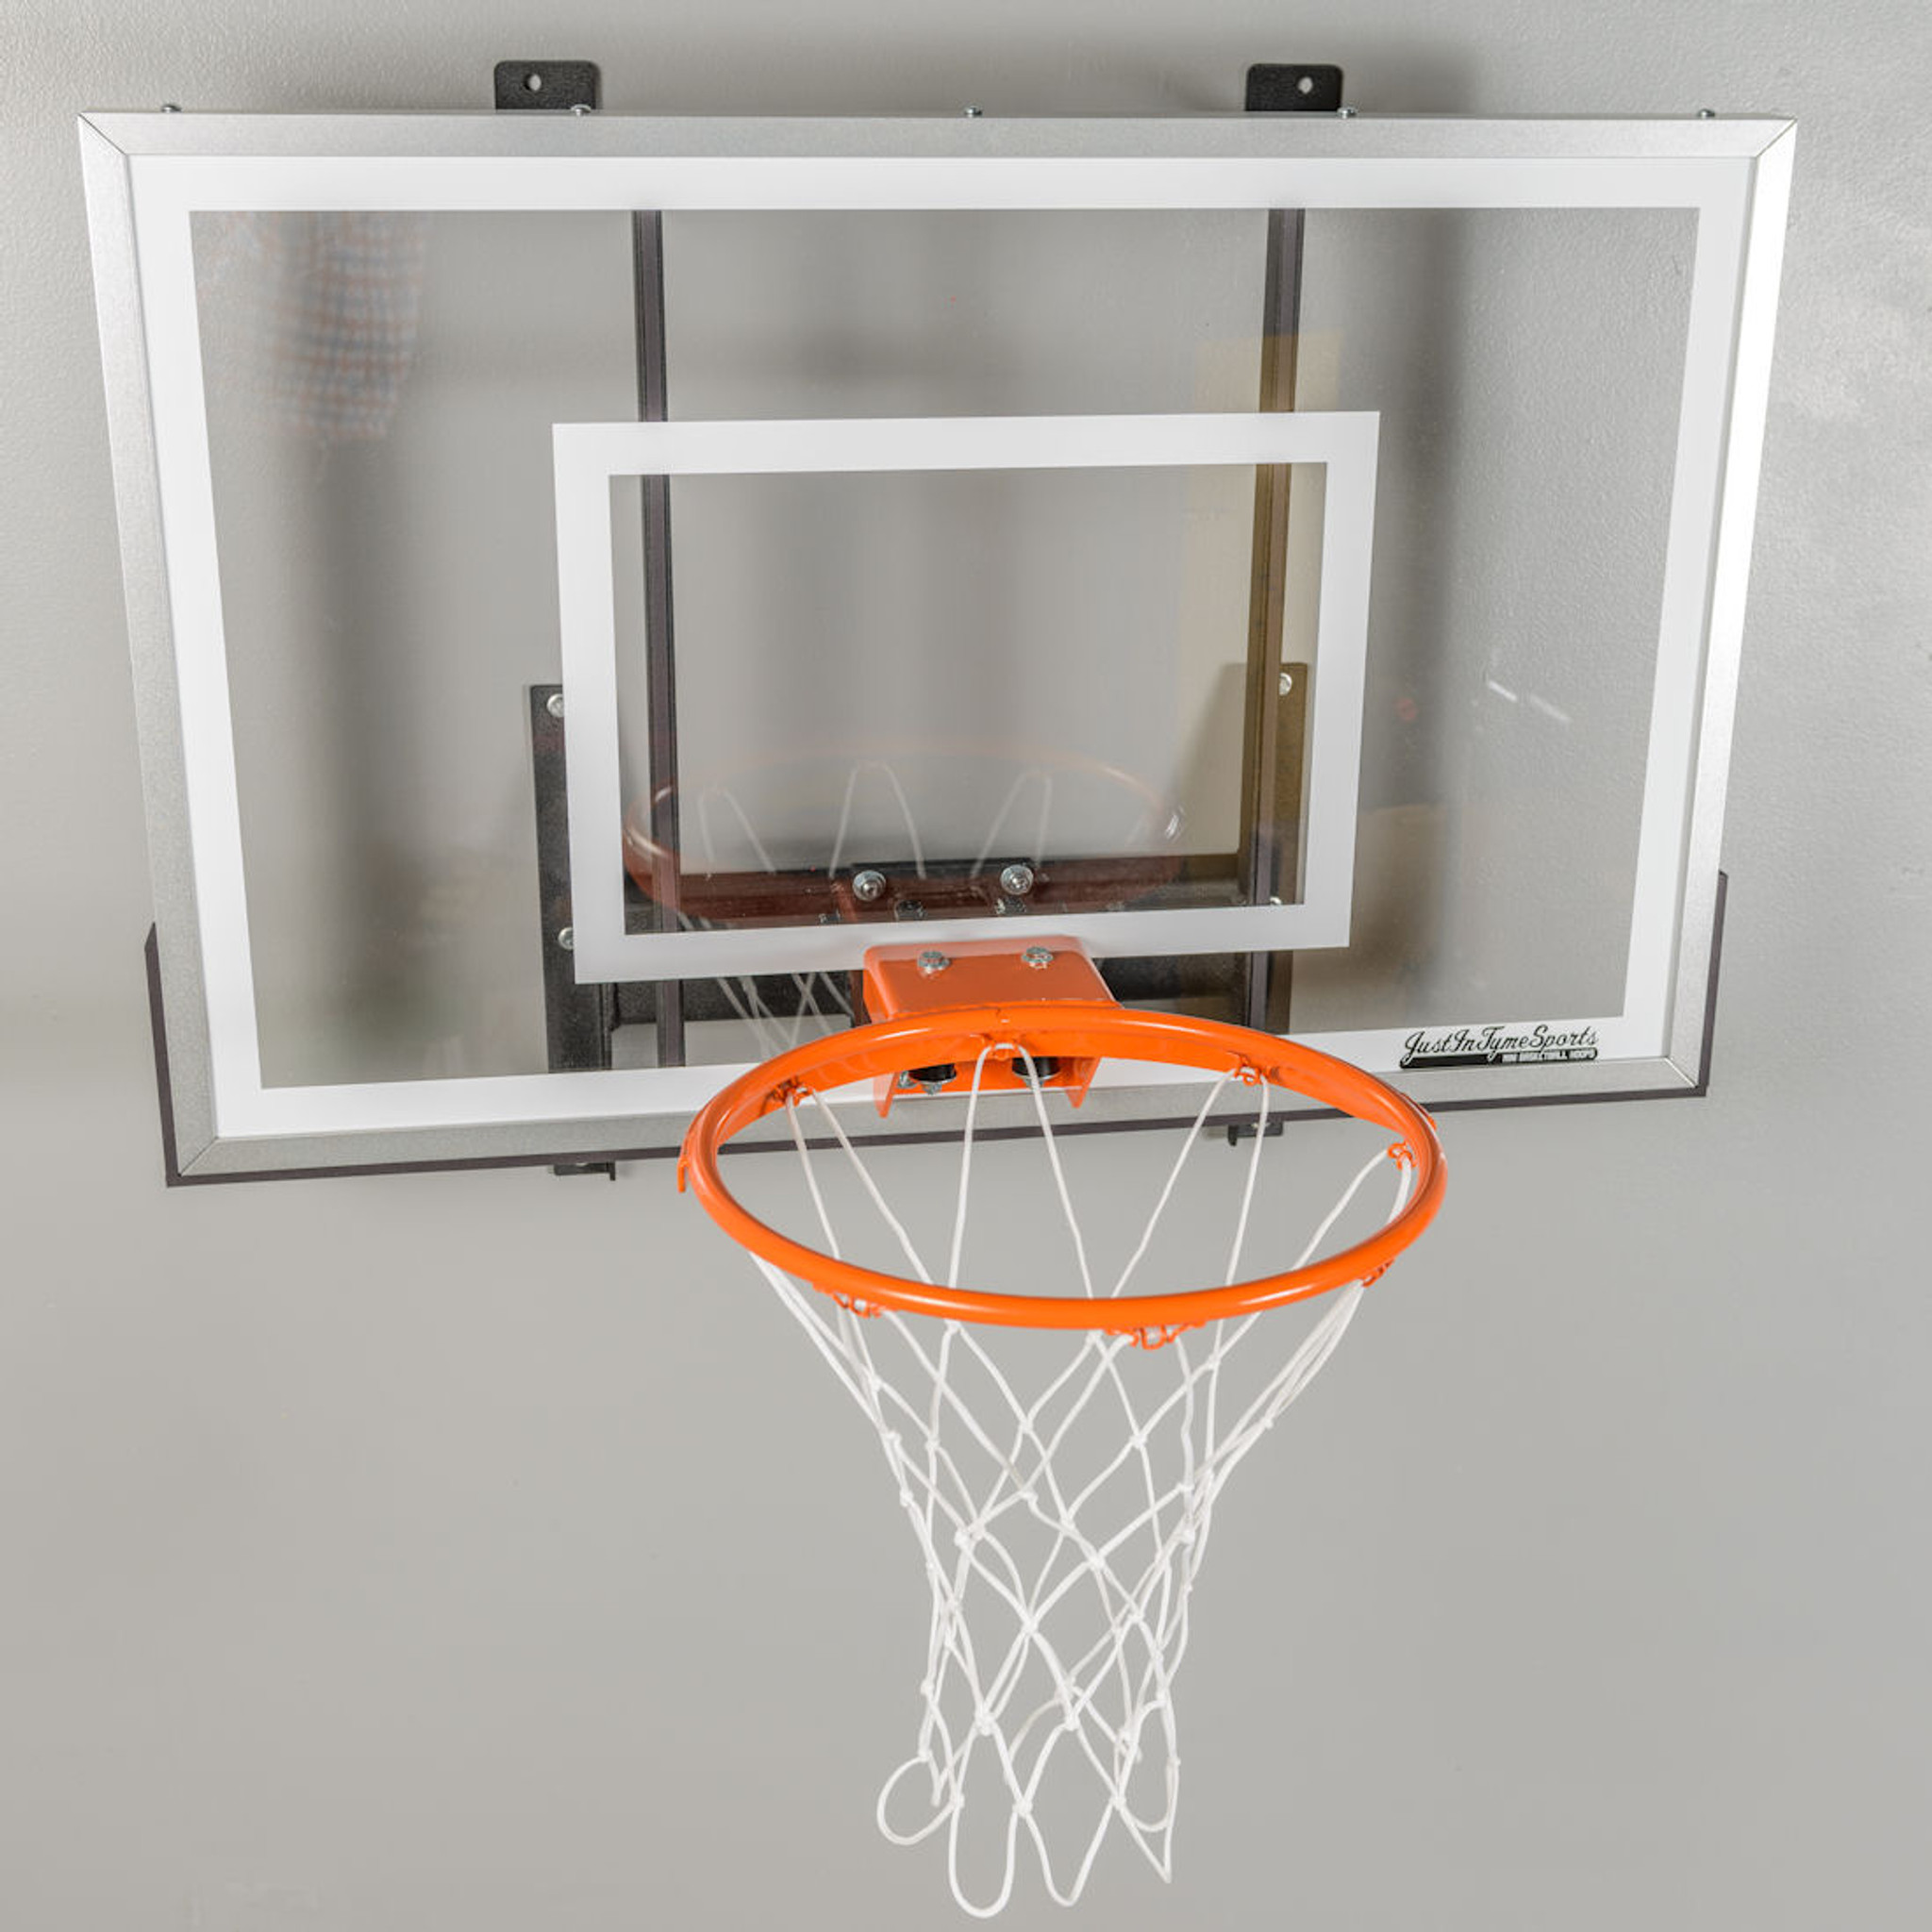 Midwest Basketball Hoop Set